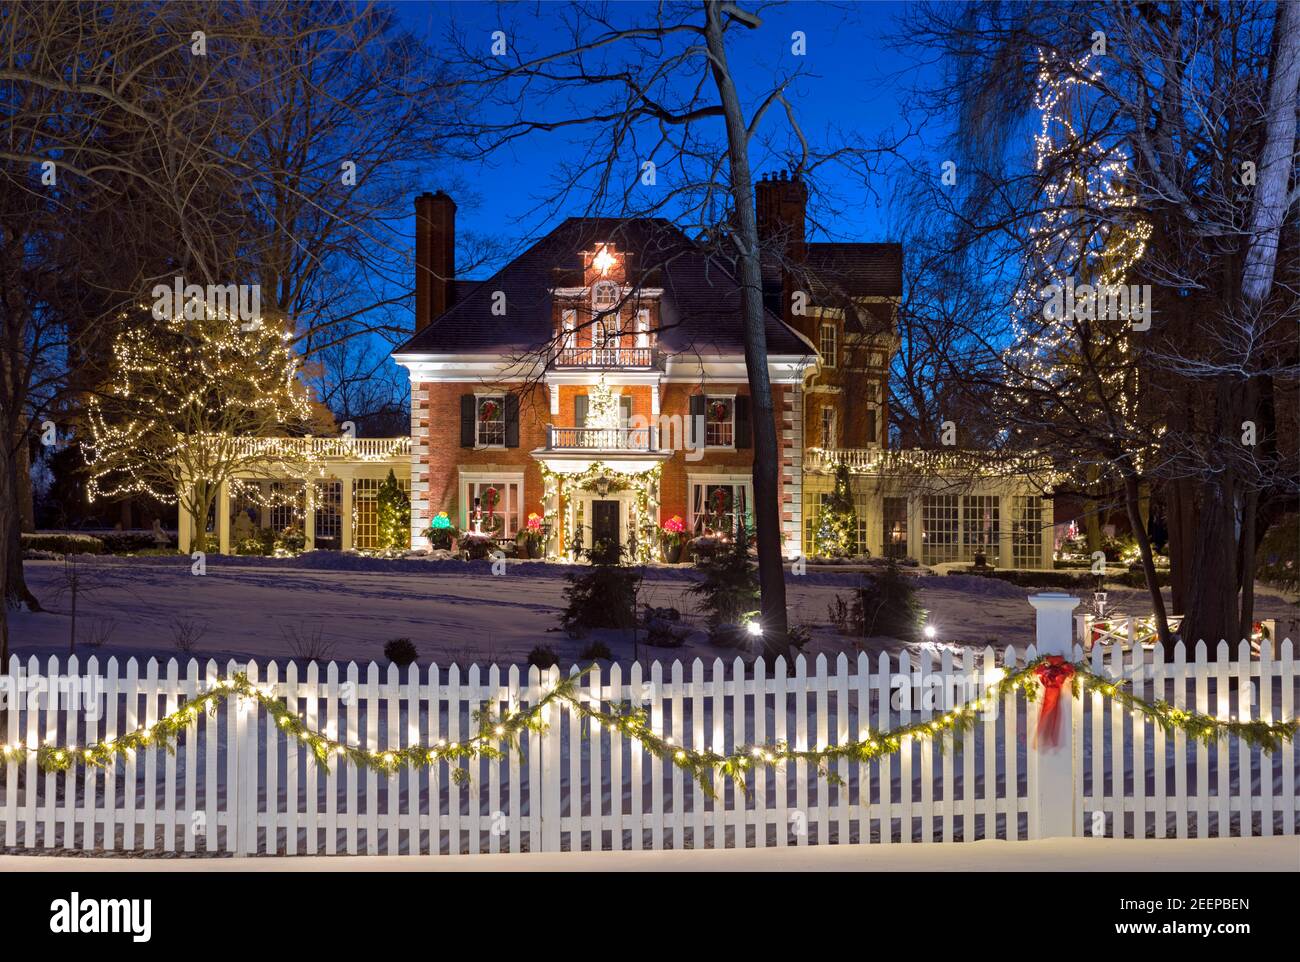 Una storica casa in mattoni degli anni '1840 decorata per Natale in un ambiente invernale innevato, recinzione bianca per picchetti e luci natalizie al crepuscolo Foto Stock